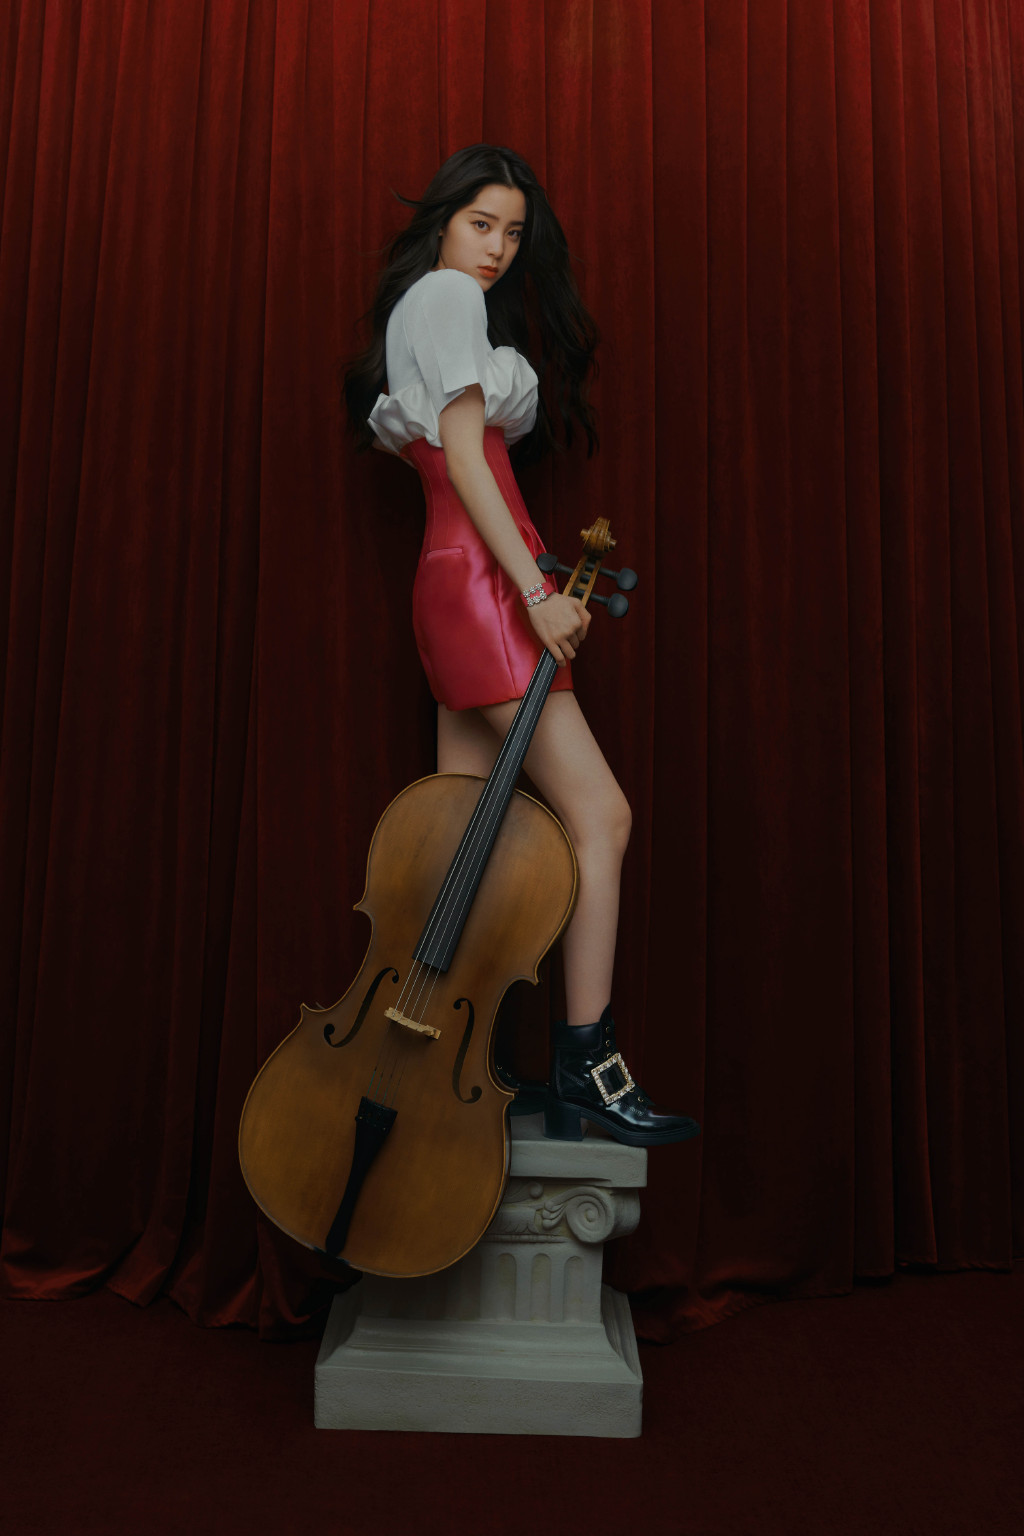 欧阳娜娜手拿大提琴剧场红色幕布前梦幻写真美照图片